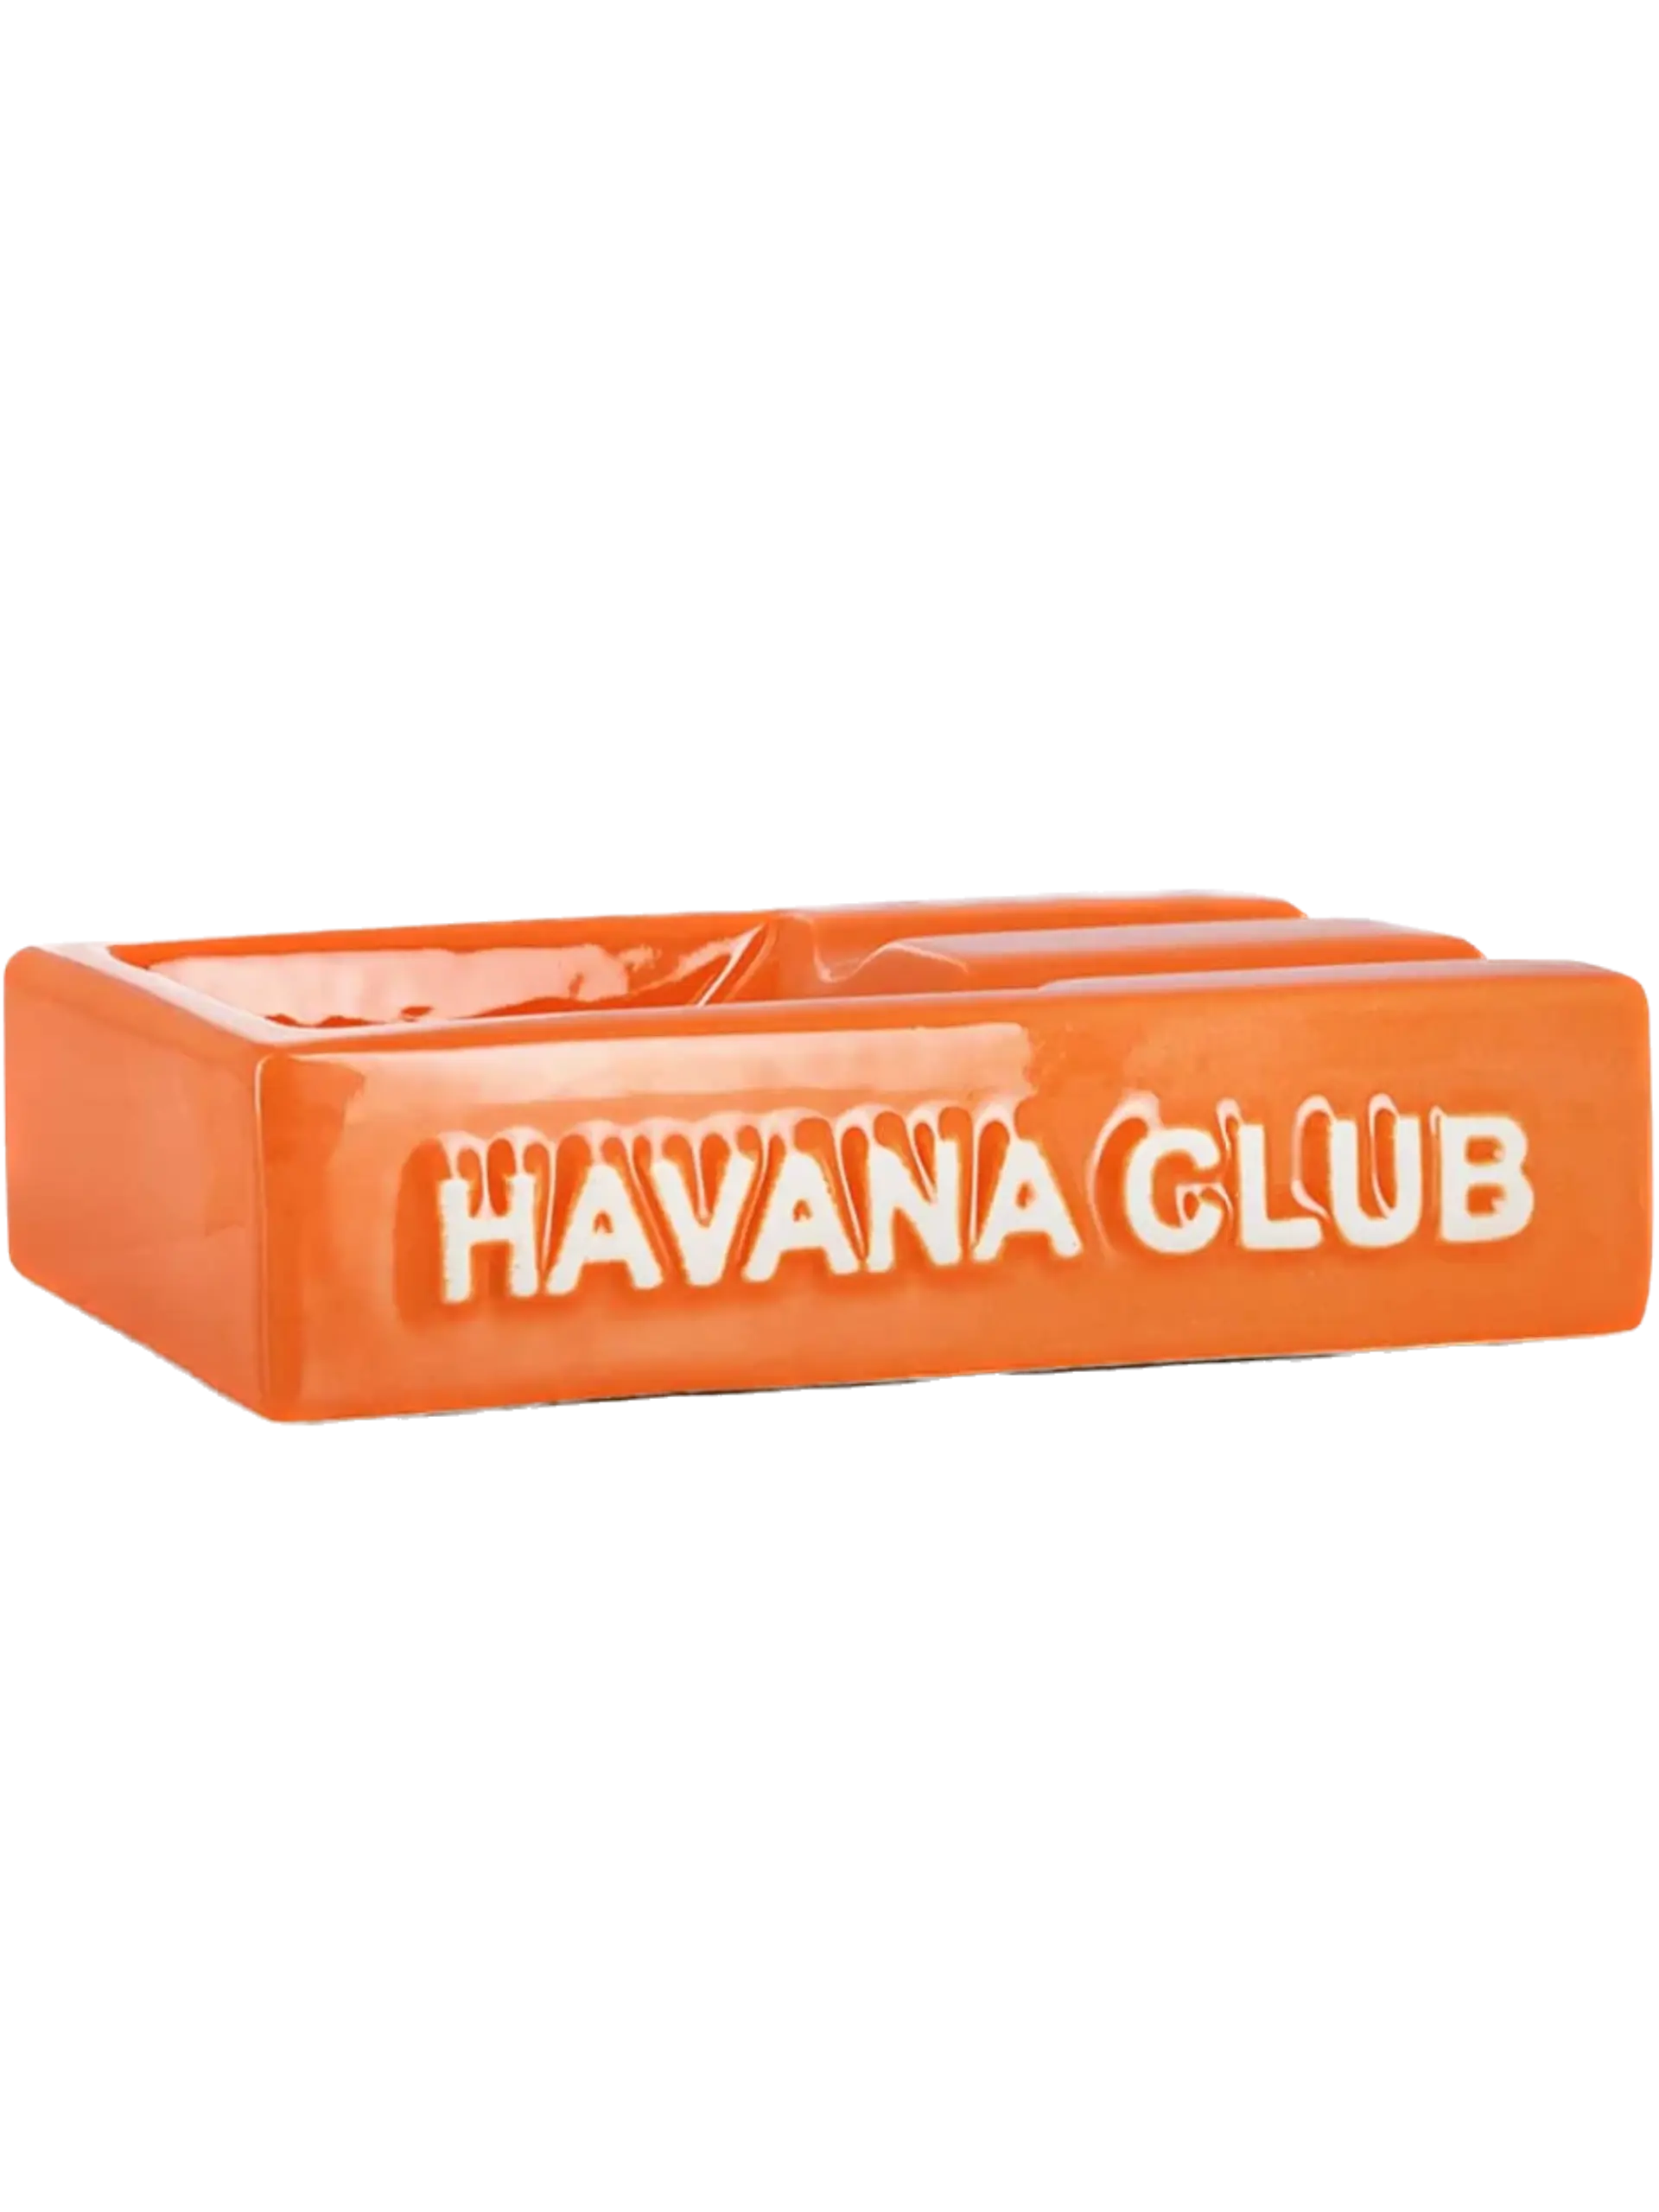 A La Civette - Les accessoires à cigares : photo de cendrier Havana Club.